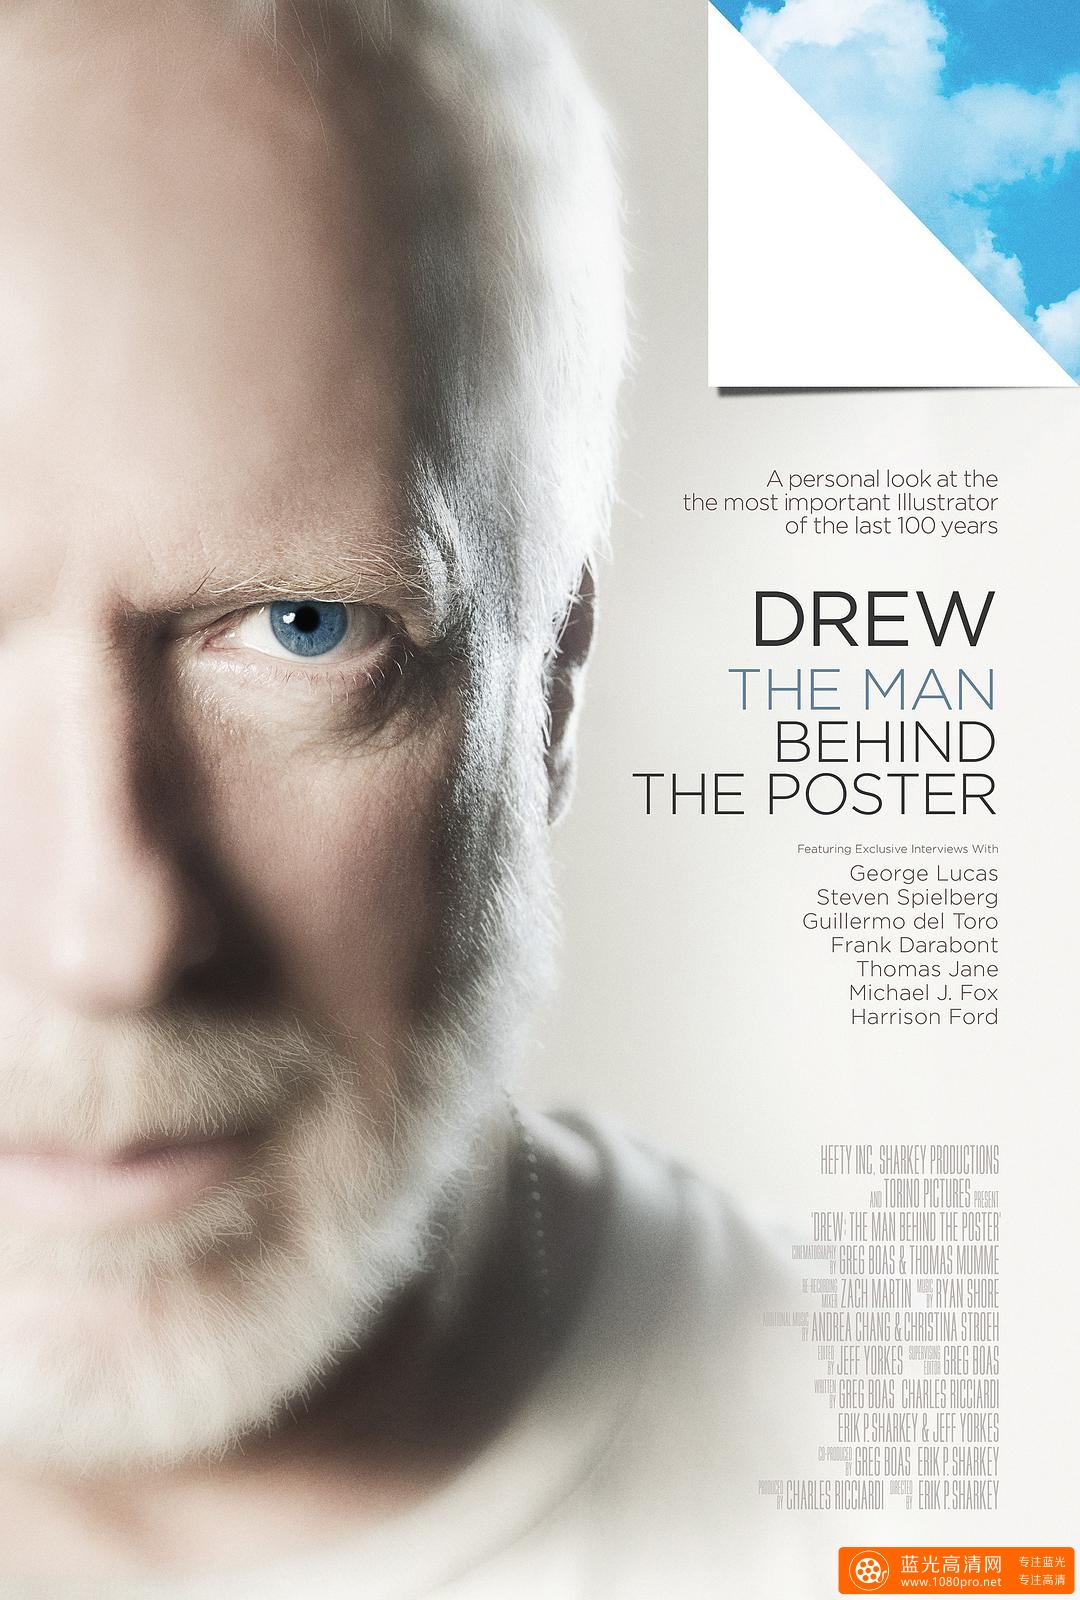 德鲁·舒赞:电影海报的幕后巨人 Drew.The.Man.Behind.The.Poster.2013.1080p.WEBRip.x264-RARBG 1.86GB ...